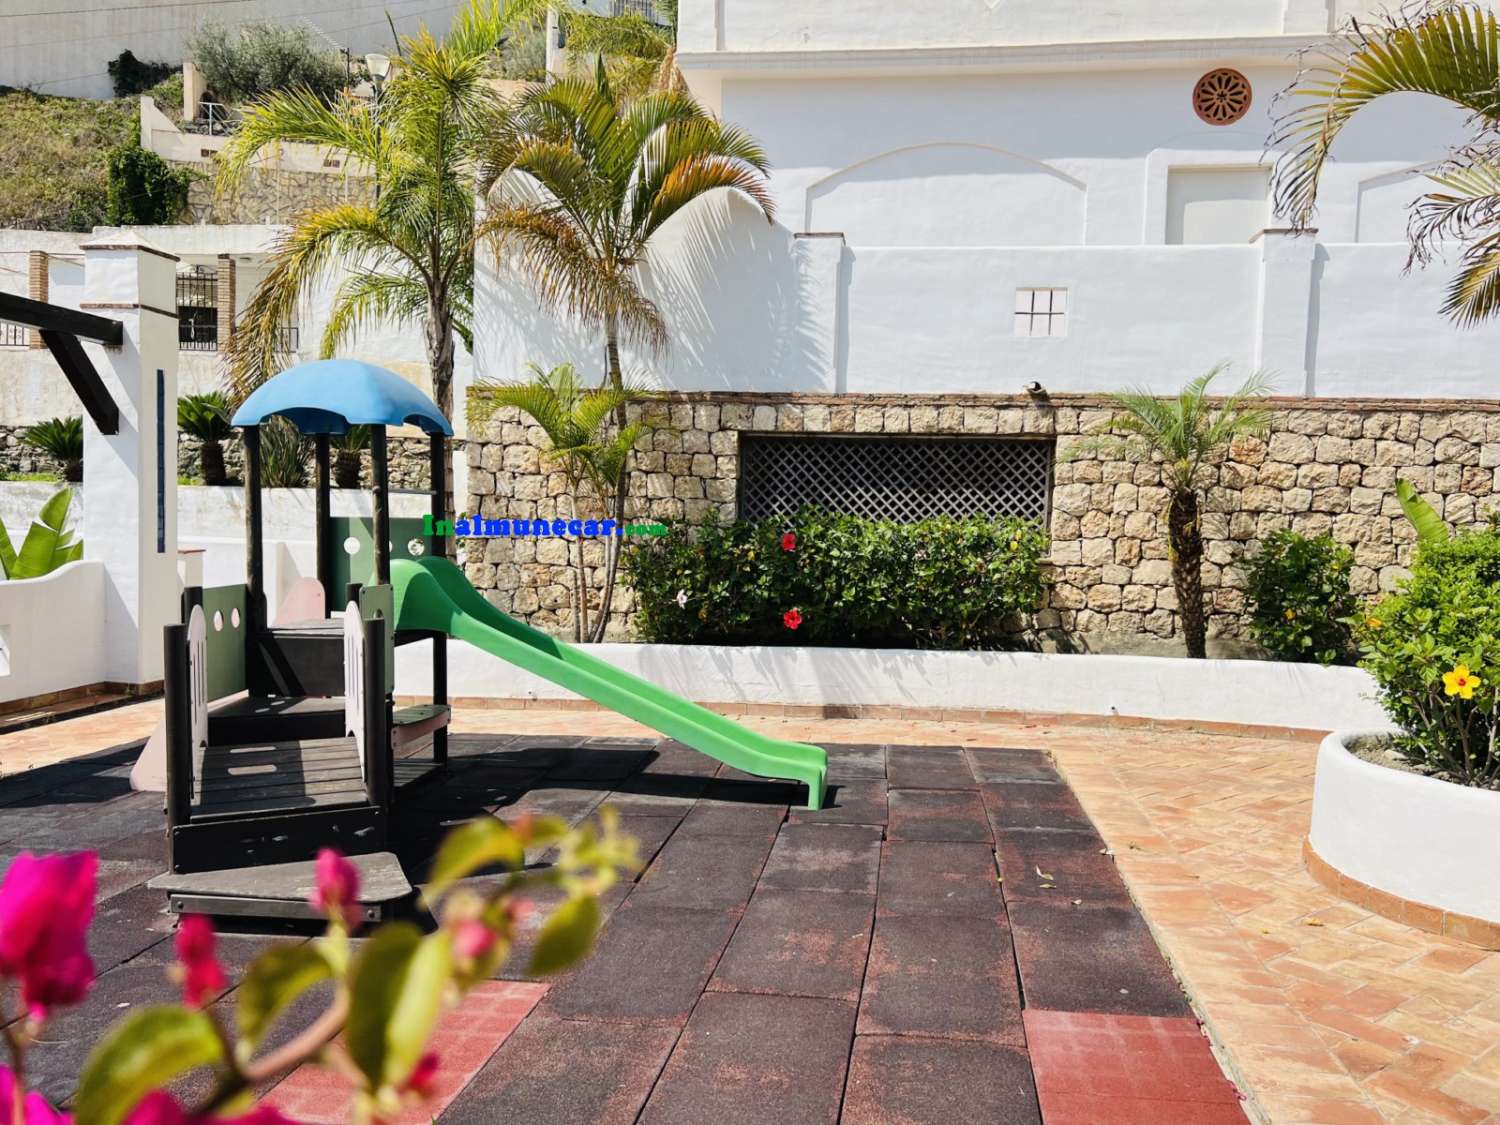 Lejlighed til salg i Almuñecar med stor terrasse og tæt på San Cristobal strand